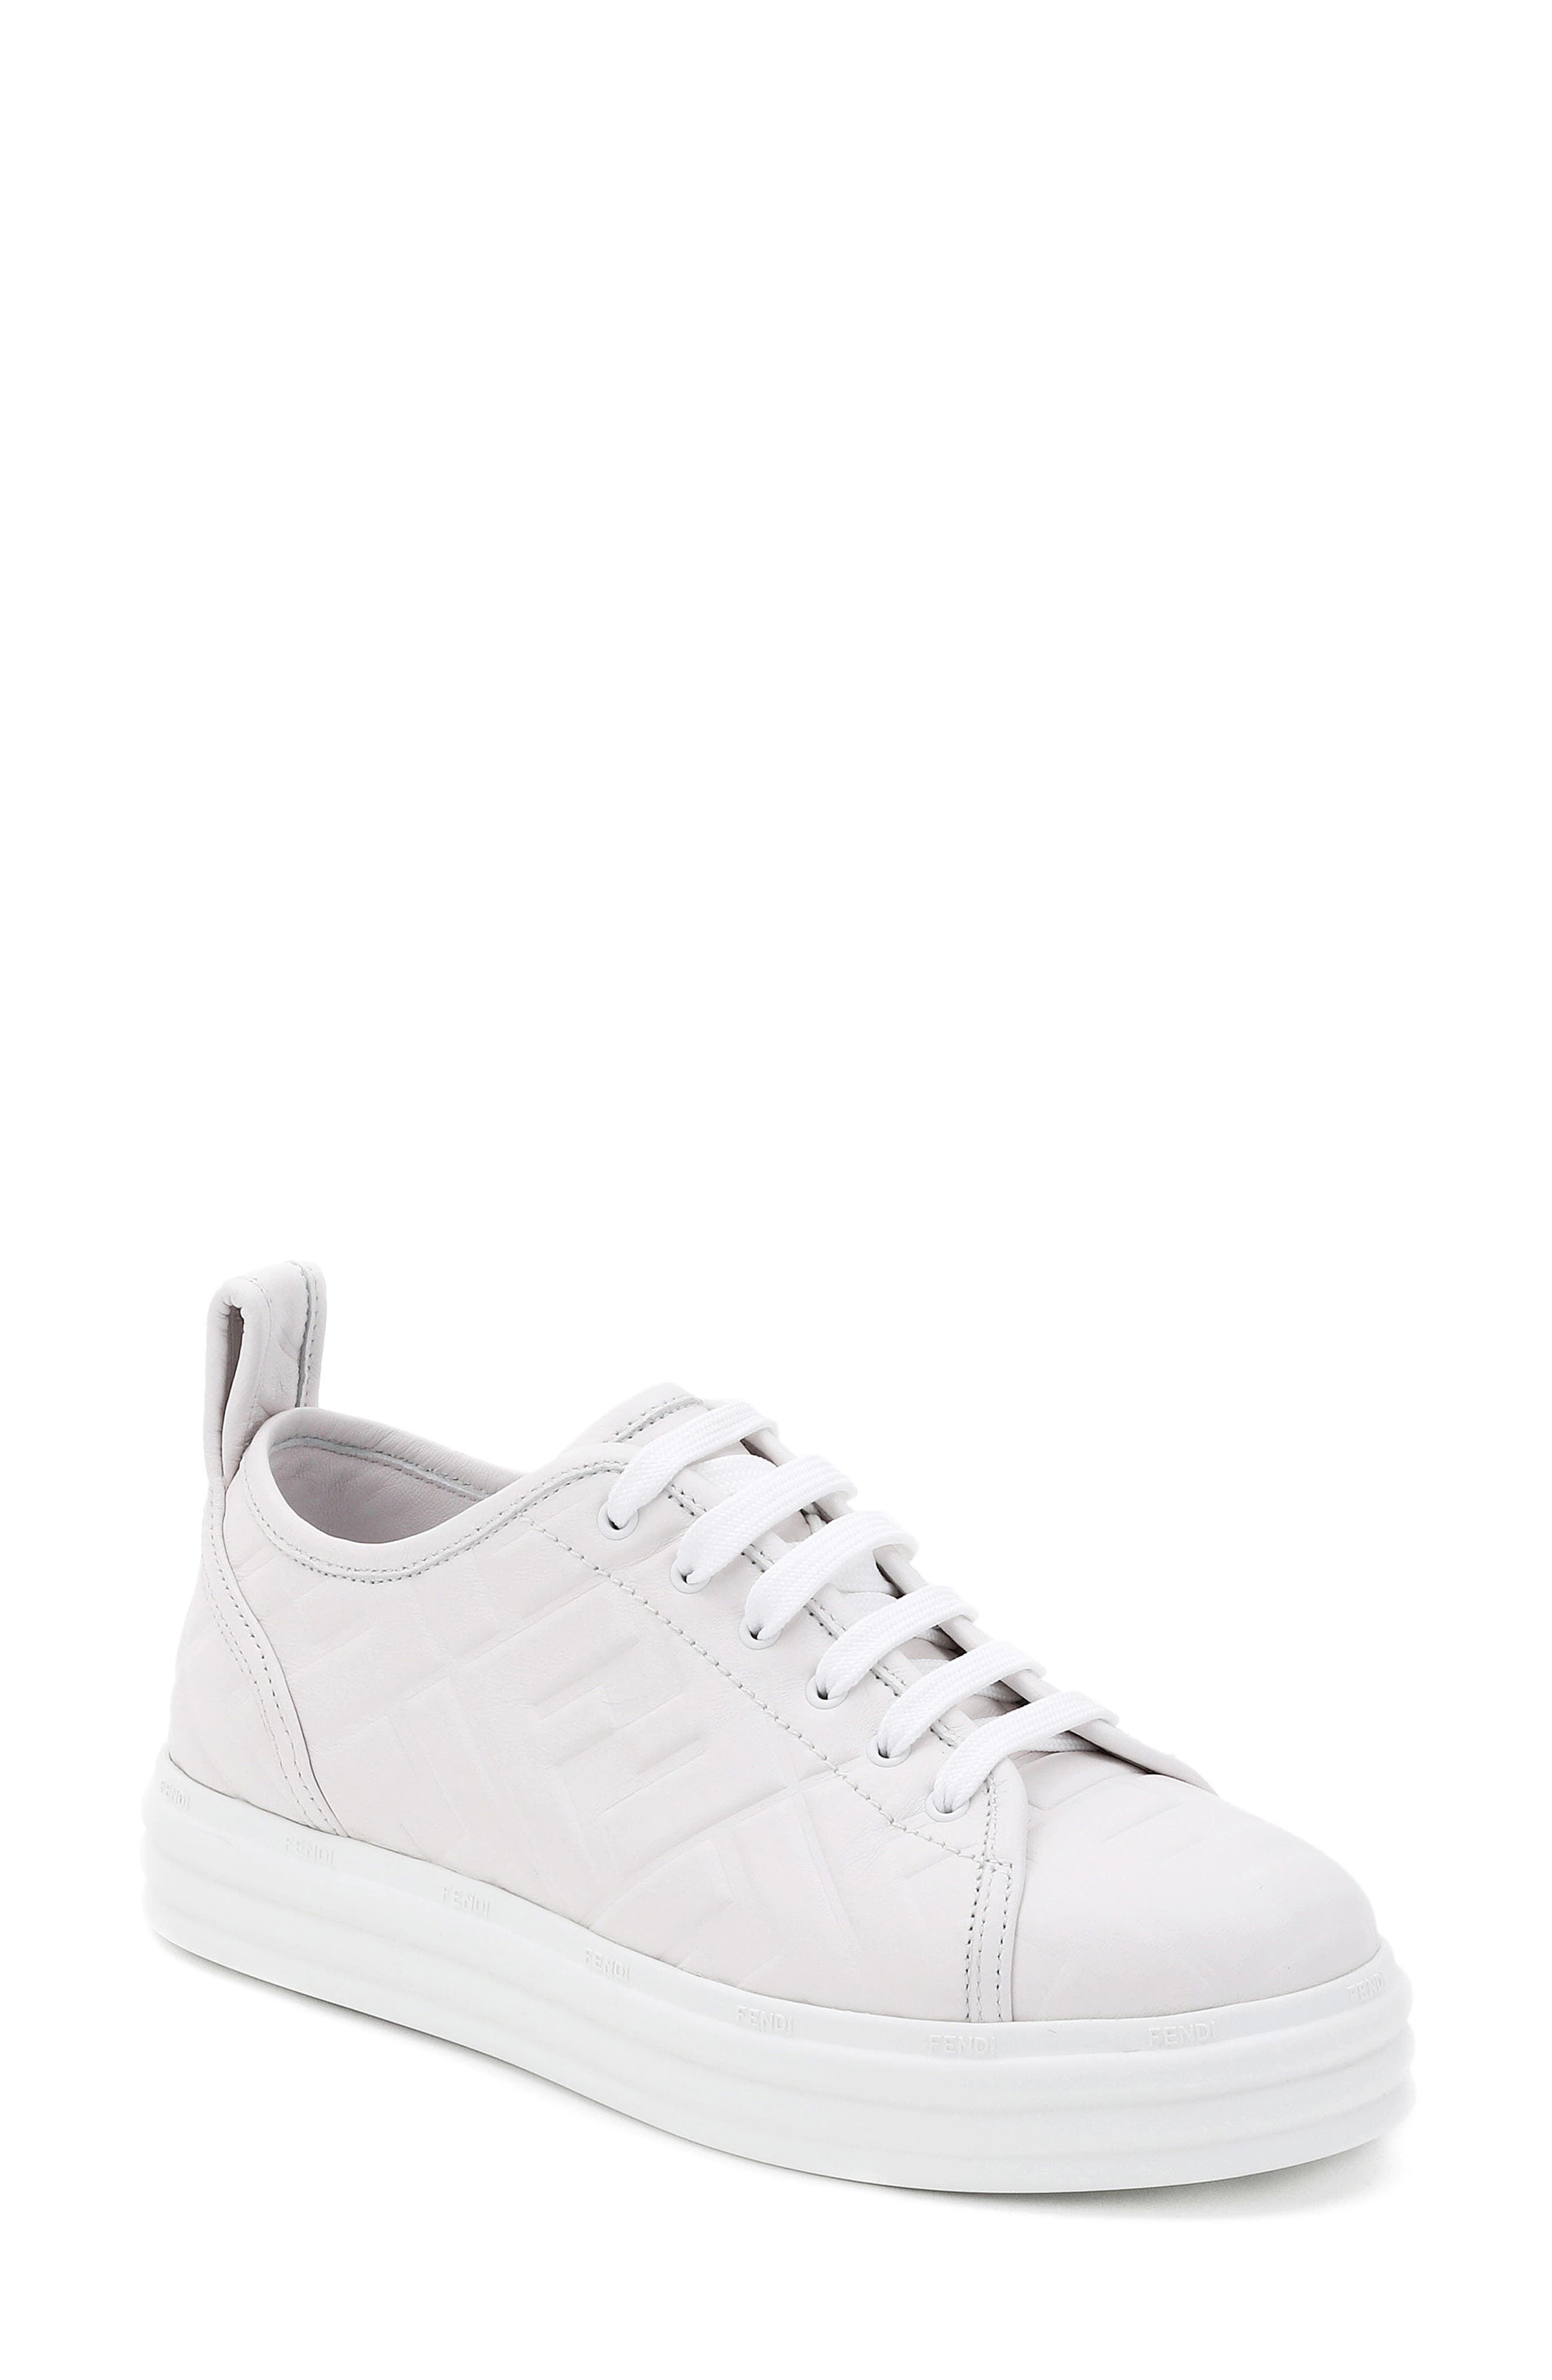 fendi white sneakers